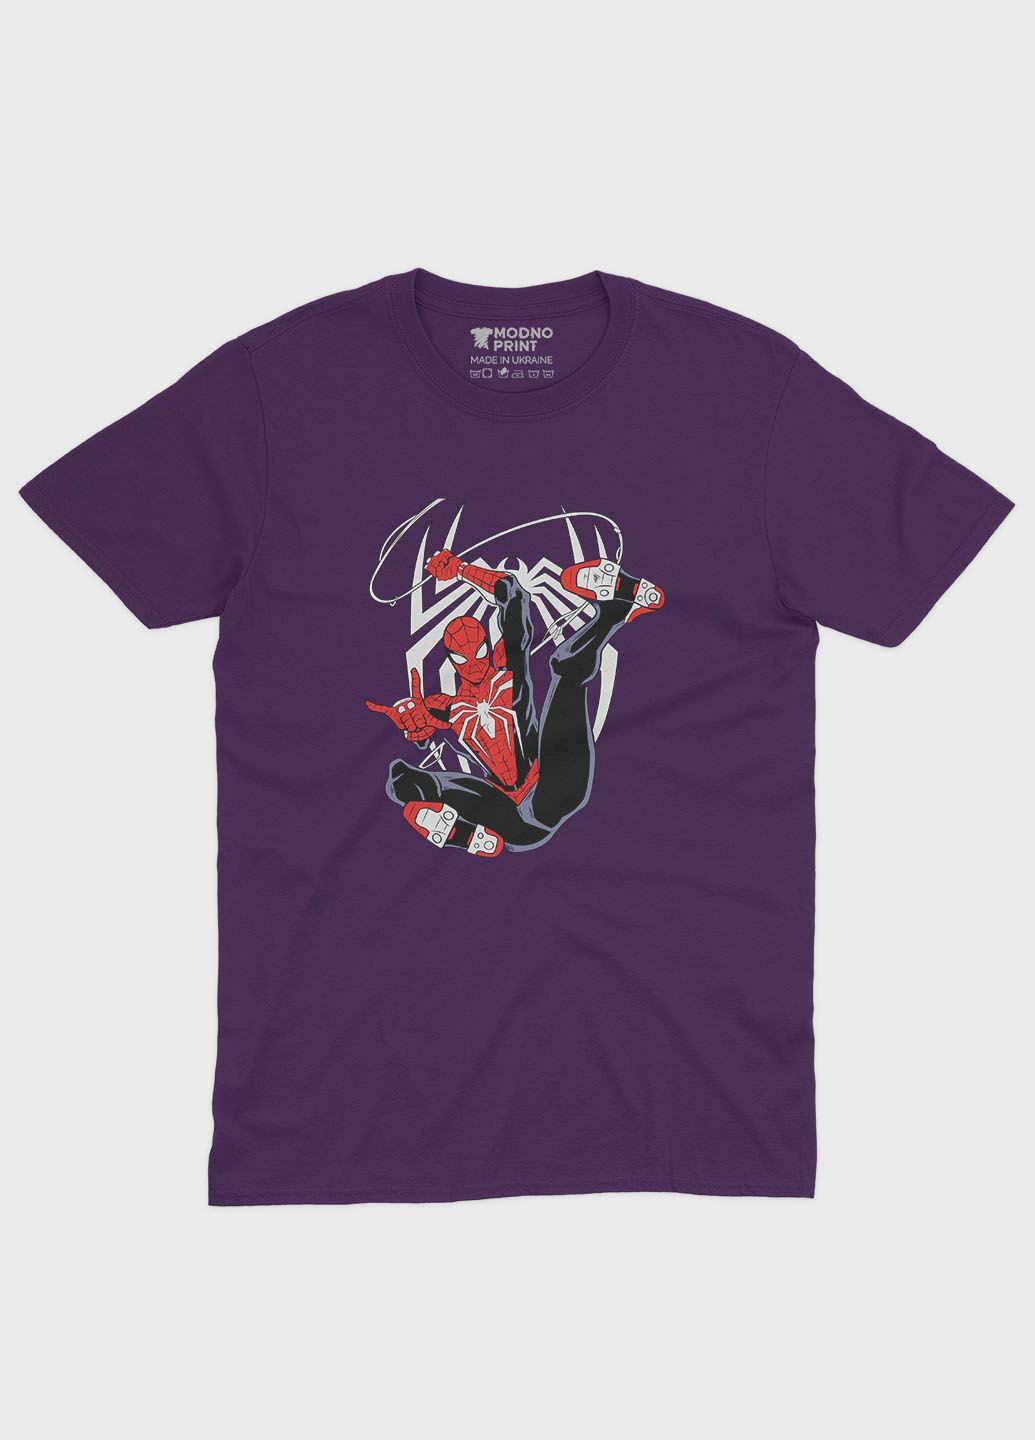 Фіолетова демісезонна футболка для дівчинки з принтом супергероя - людина-павук (ts001-1-dby-006-014-025-g) Modno